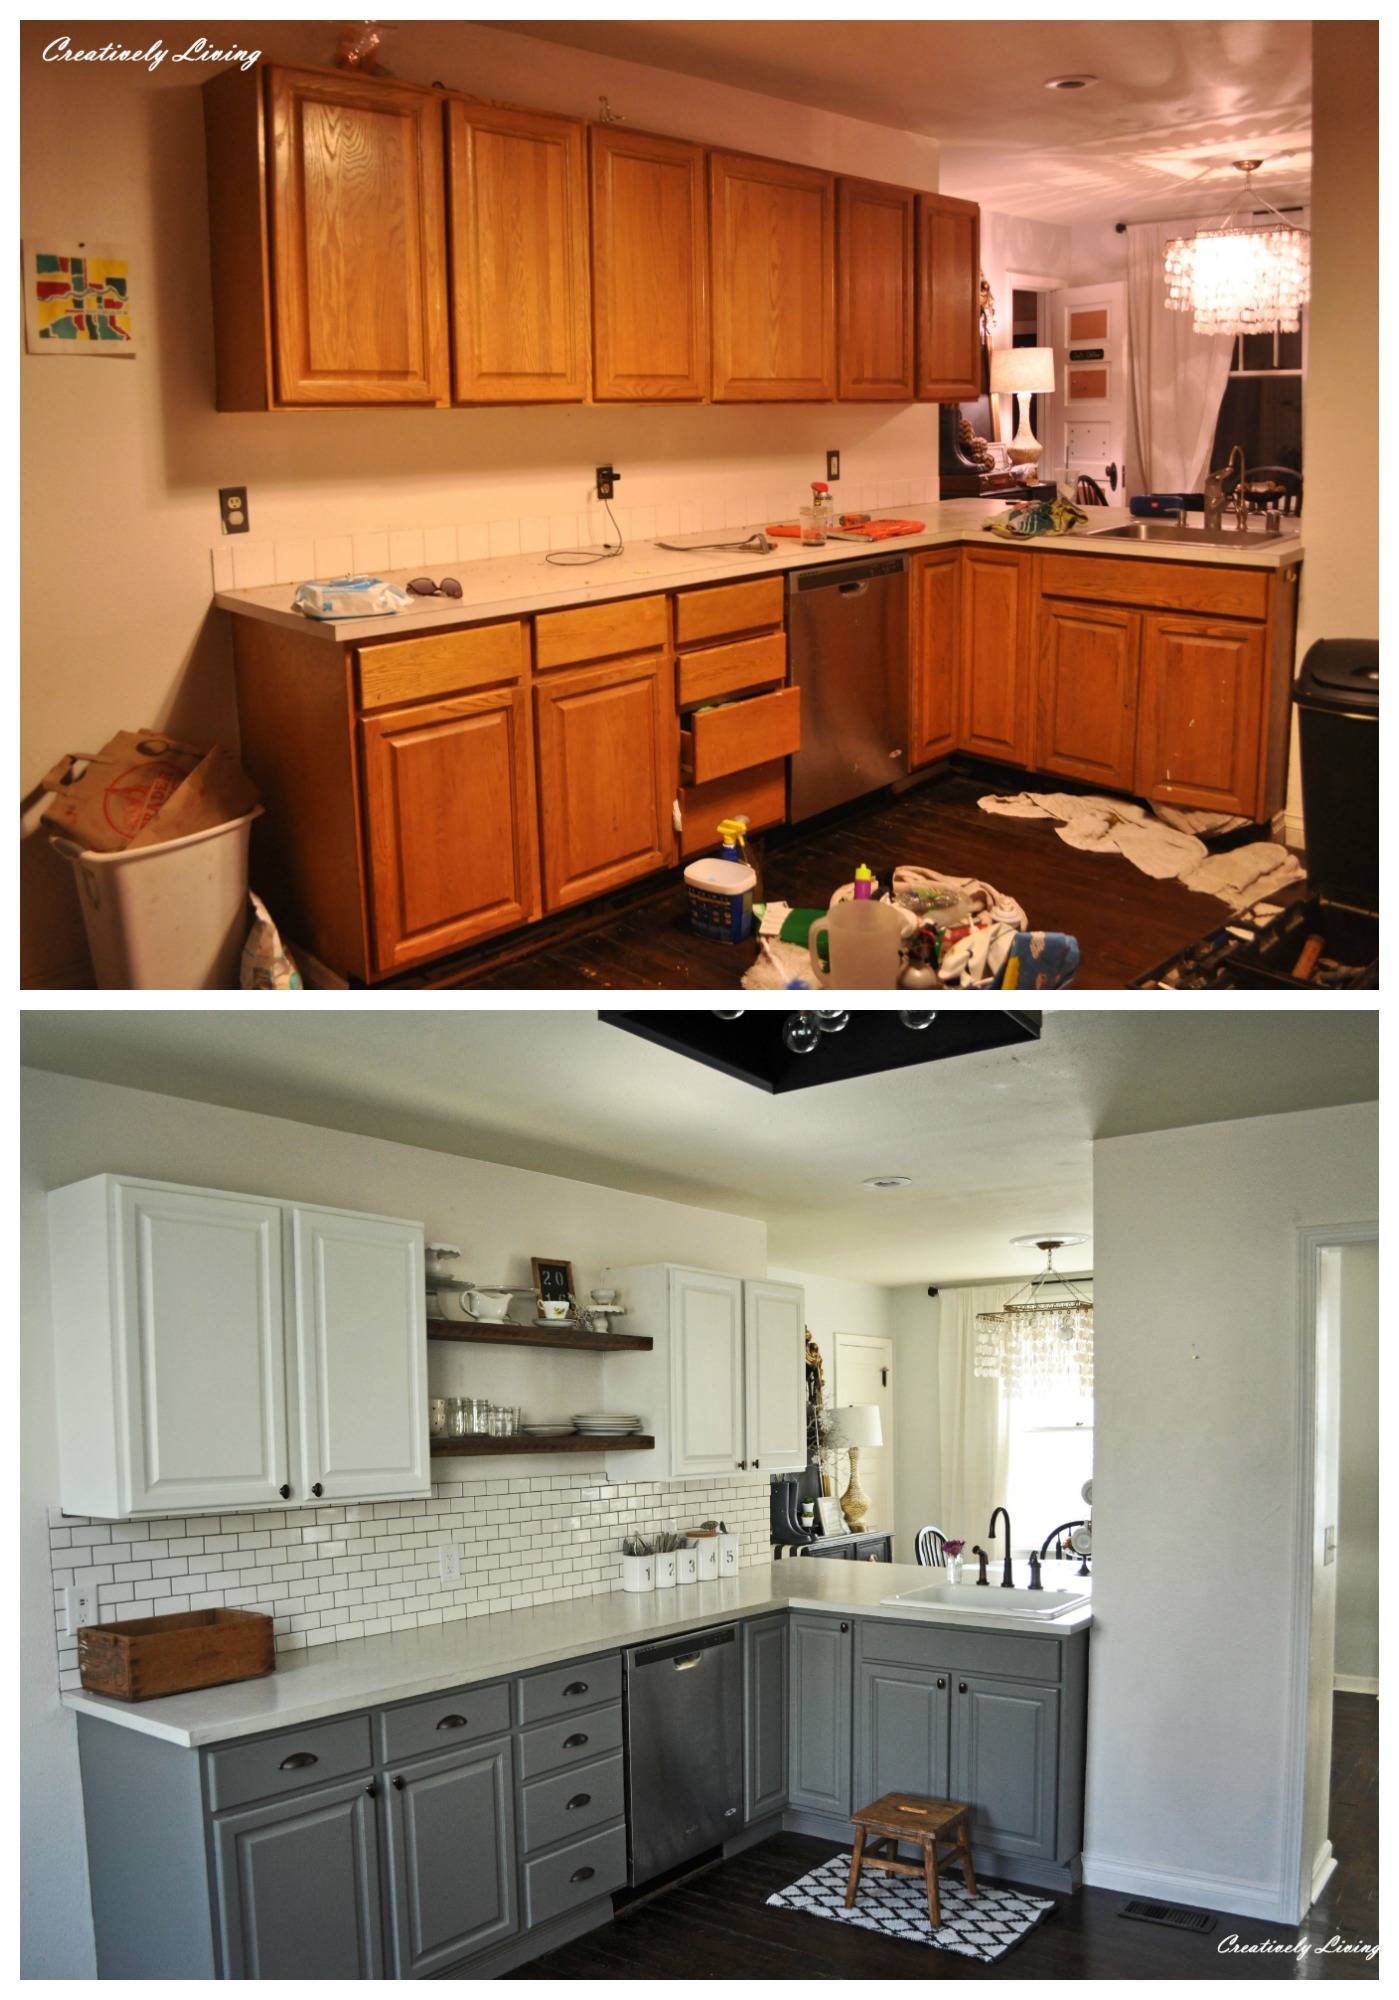 Реставрация кухонной мебели: мастер-класс своими руками по восстановлению фасада гарнитура – фото и видео рекомендации